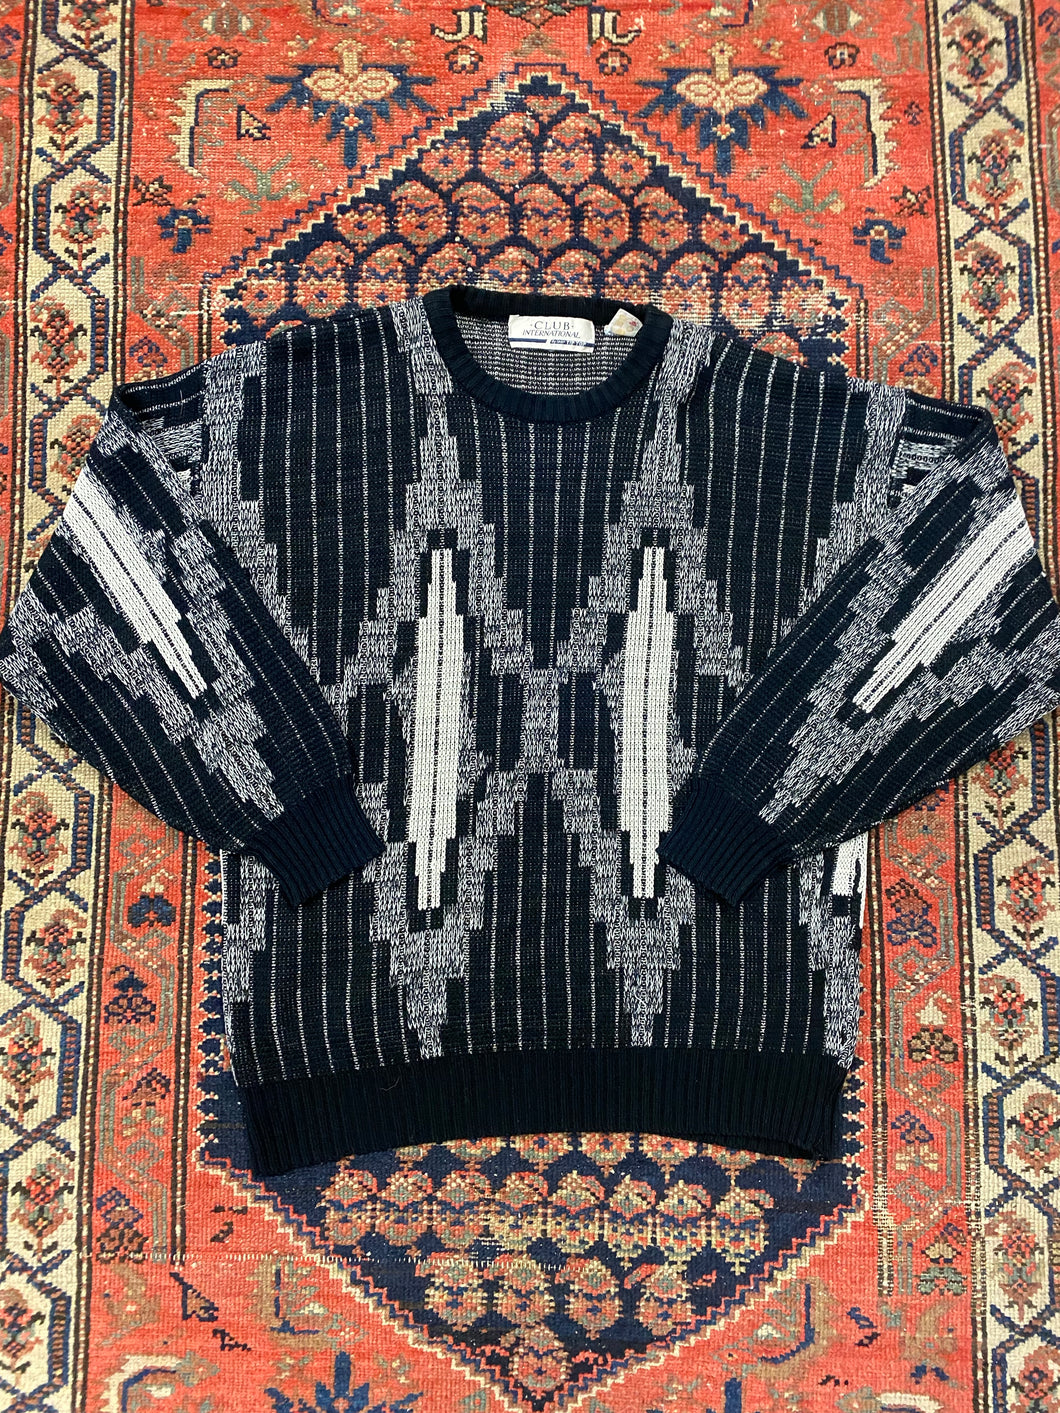 90s Knit Sweater - L